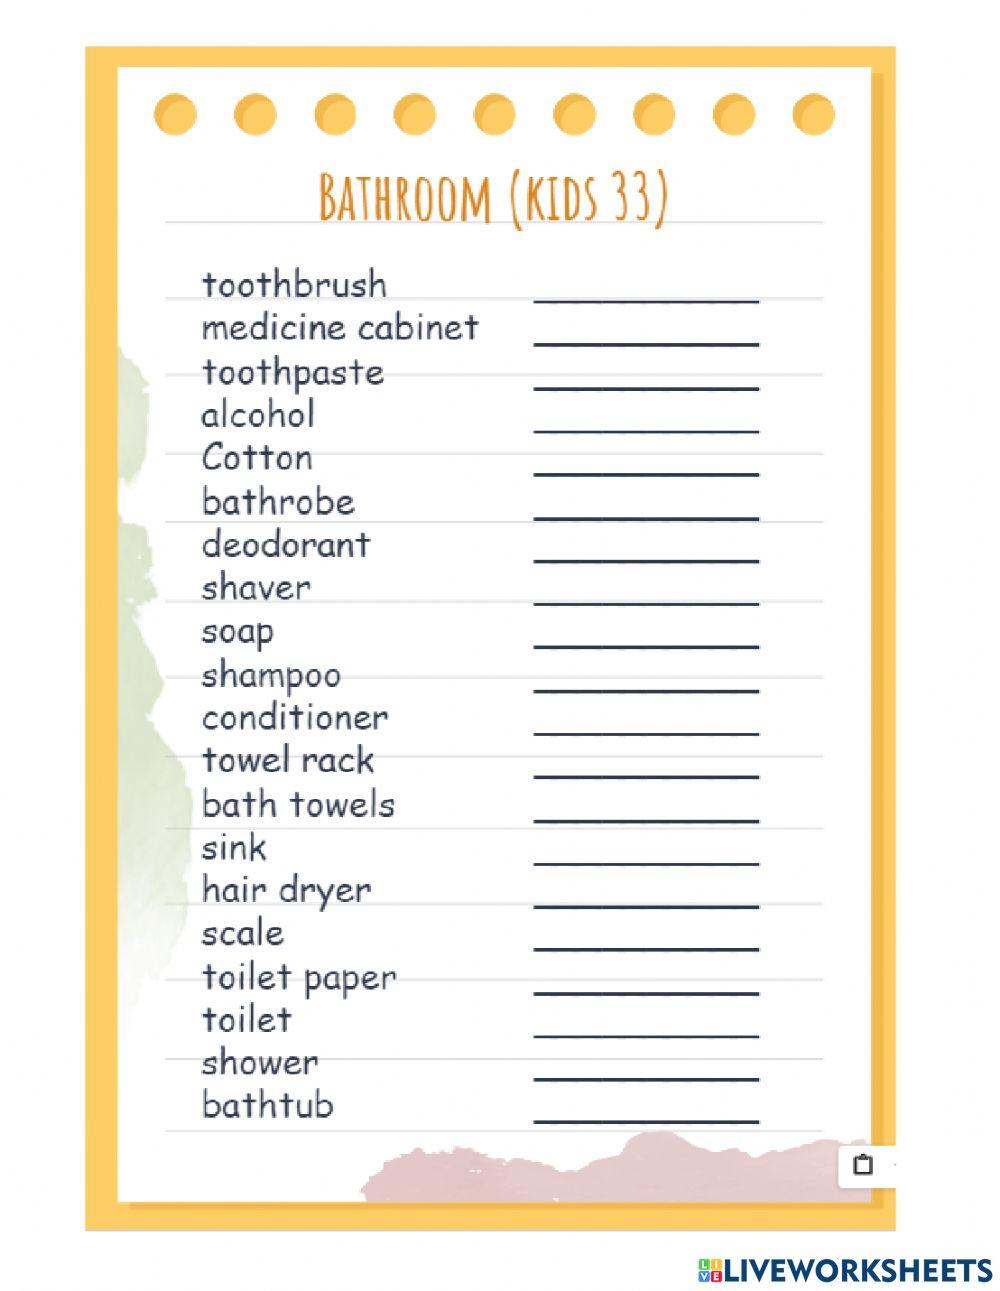 Bathroom vocabulary